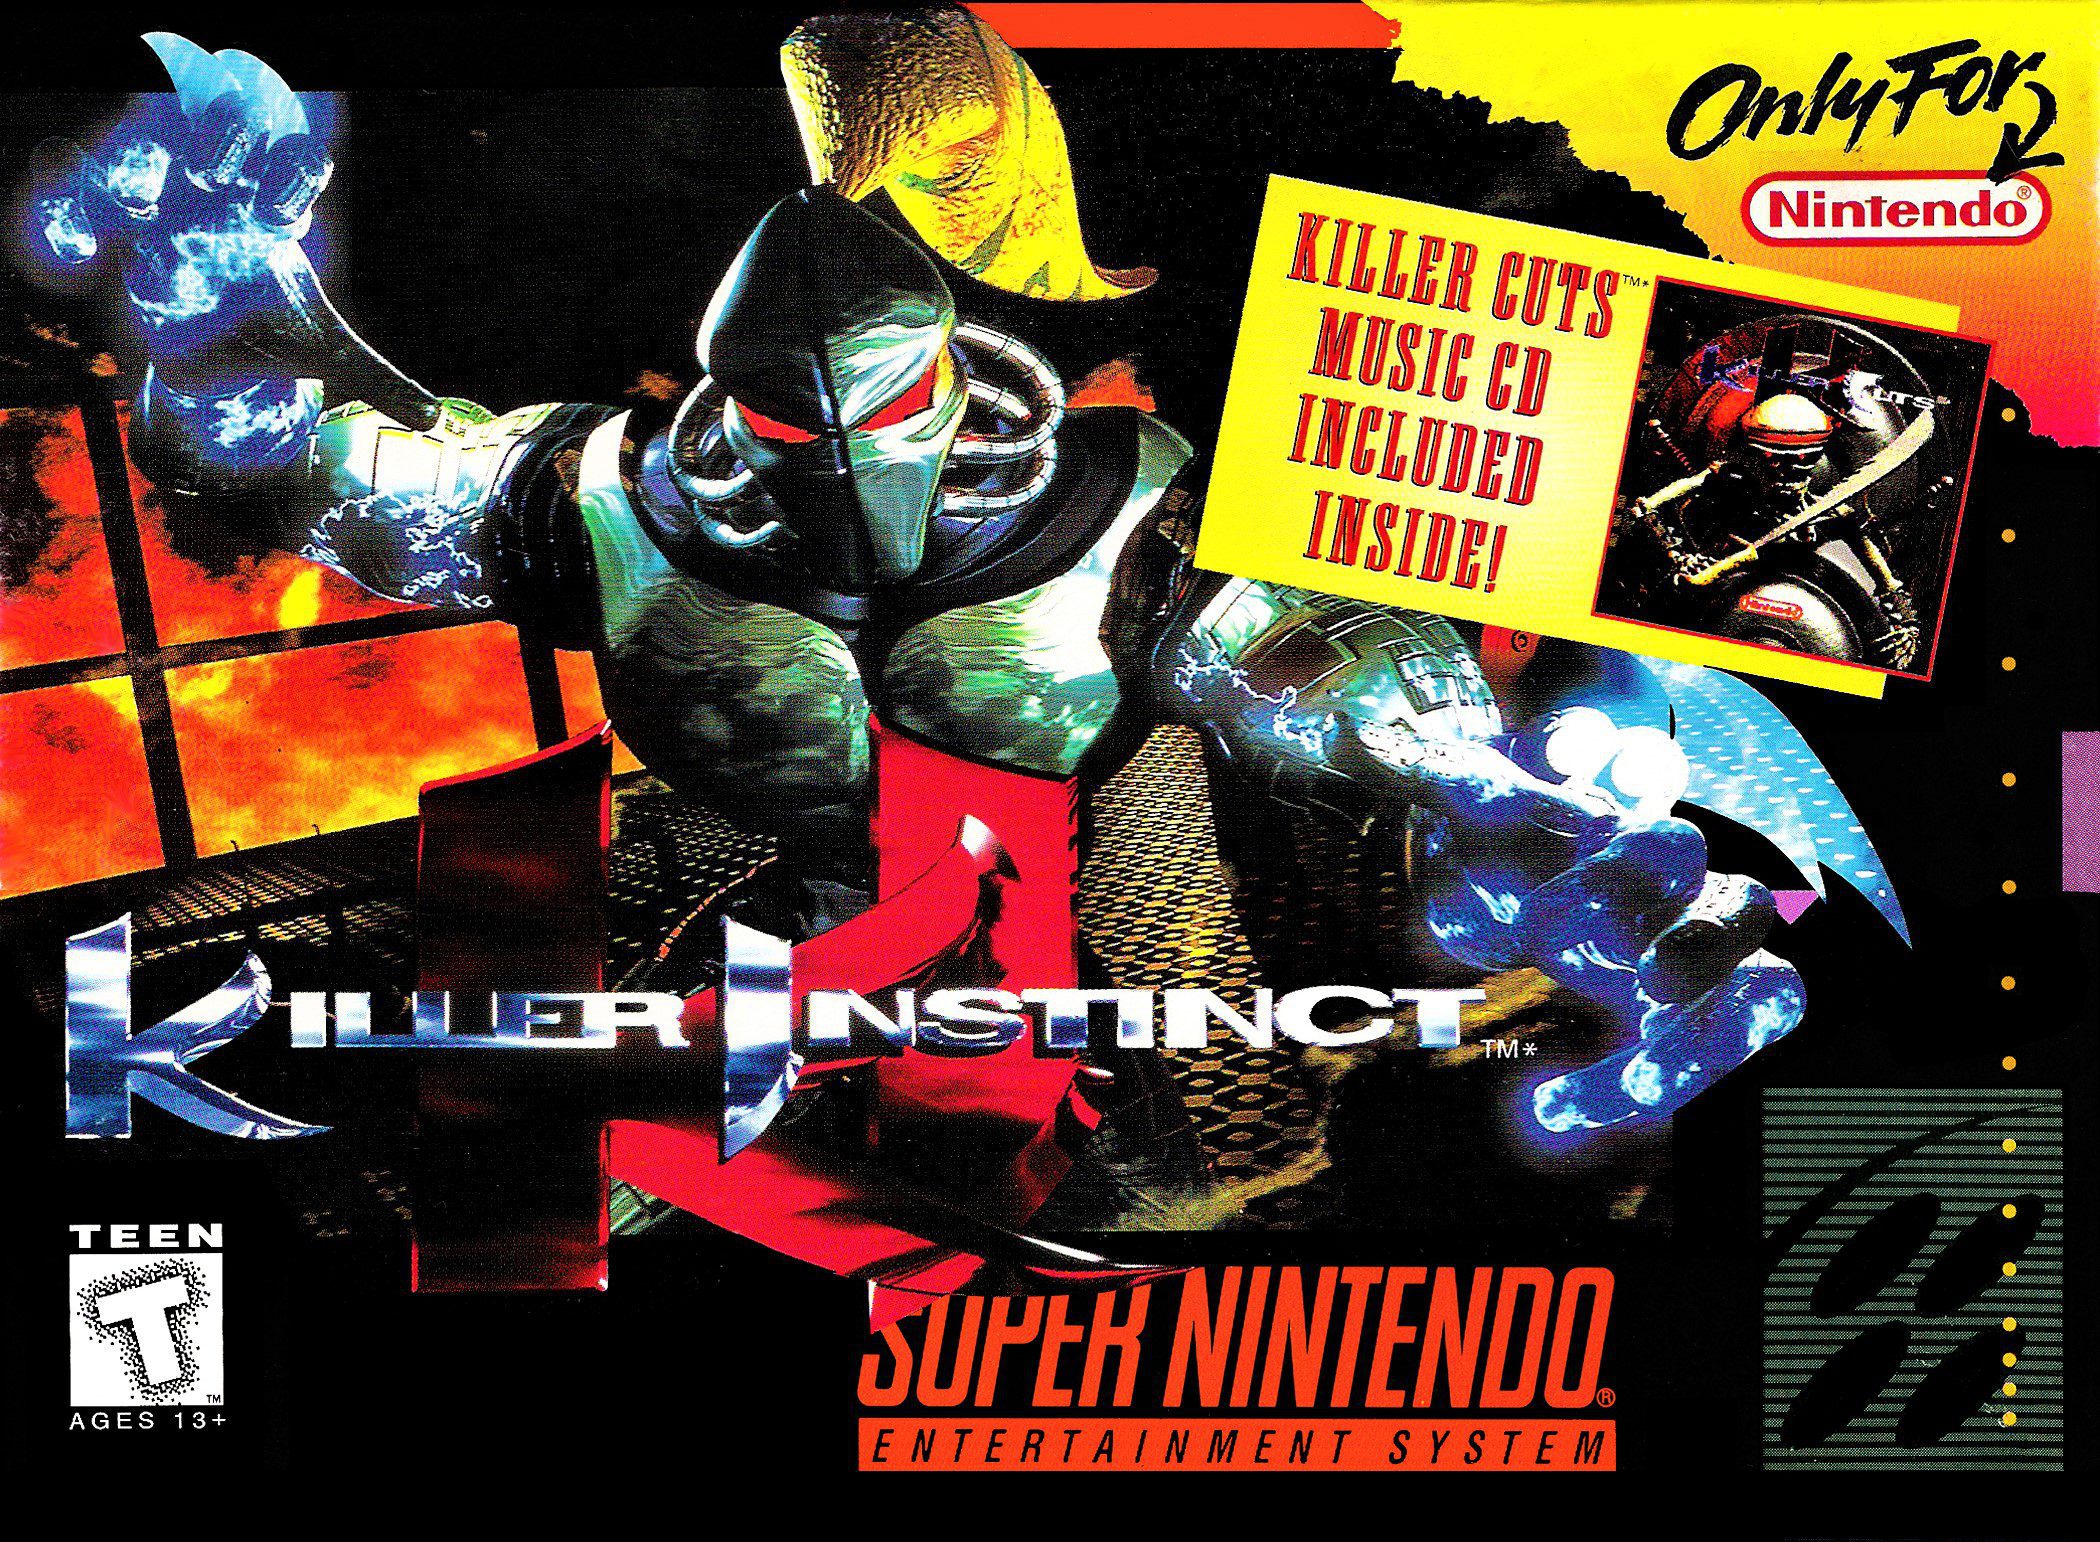 Killer Instinct for Super Nintendo Entertainment System (SNES)